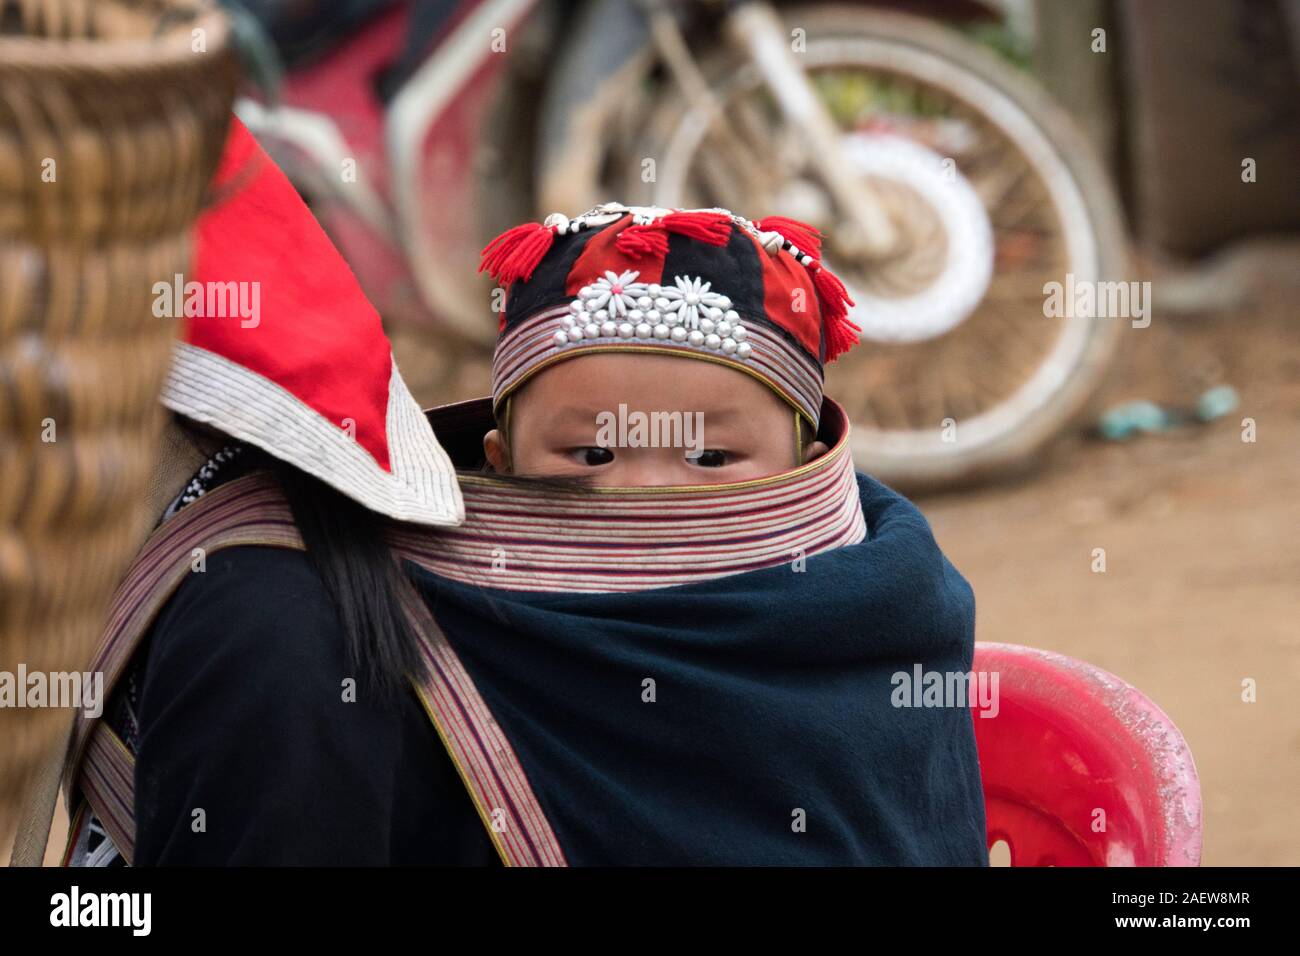 TA PHIN, LAO CAI, Vietnam - 12 de enero de 2019: un niño pequeño en una bolsa detrás de una adolescente. Los dzao rojo - una nación pequeña de Vietnam del Norte Foto de stock